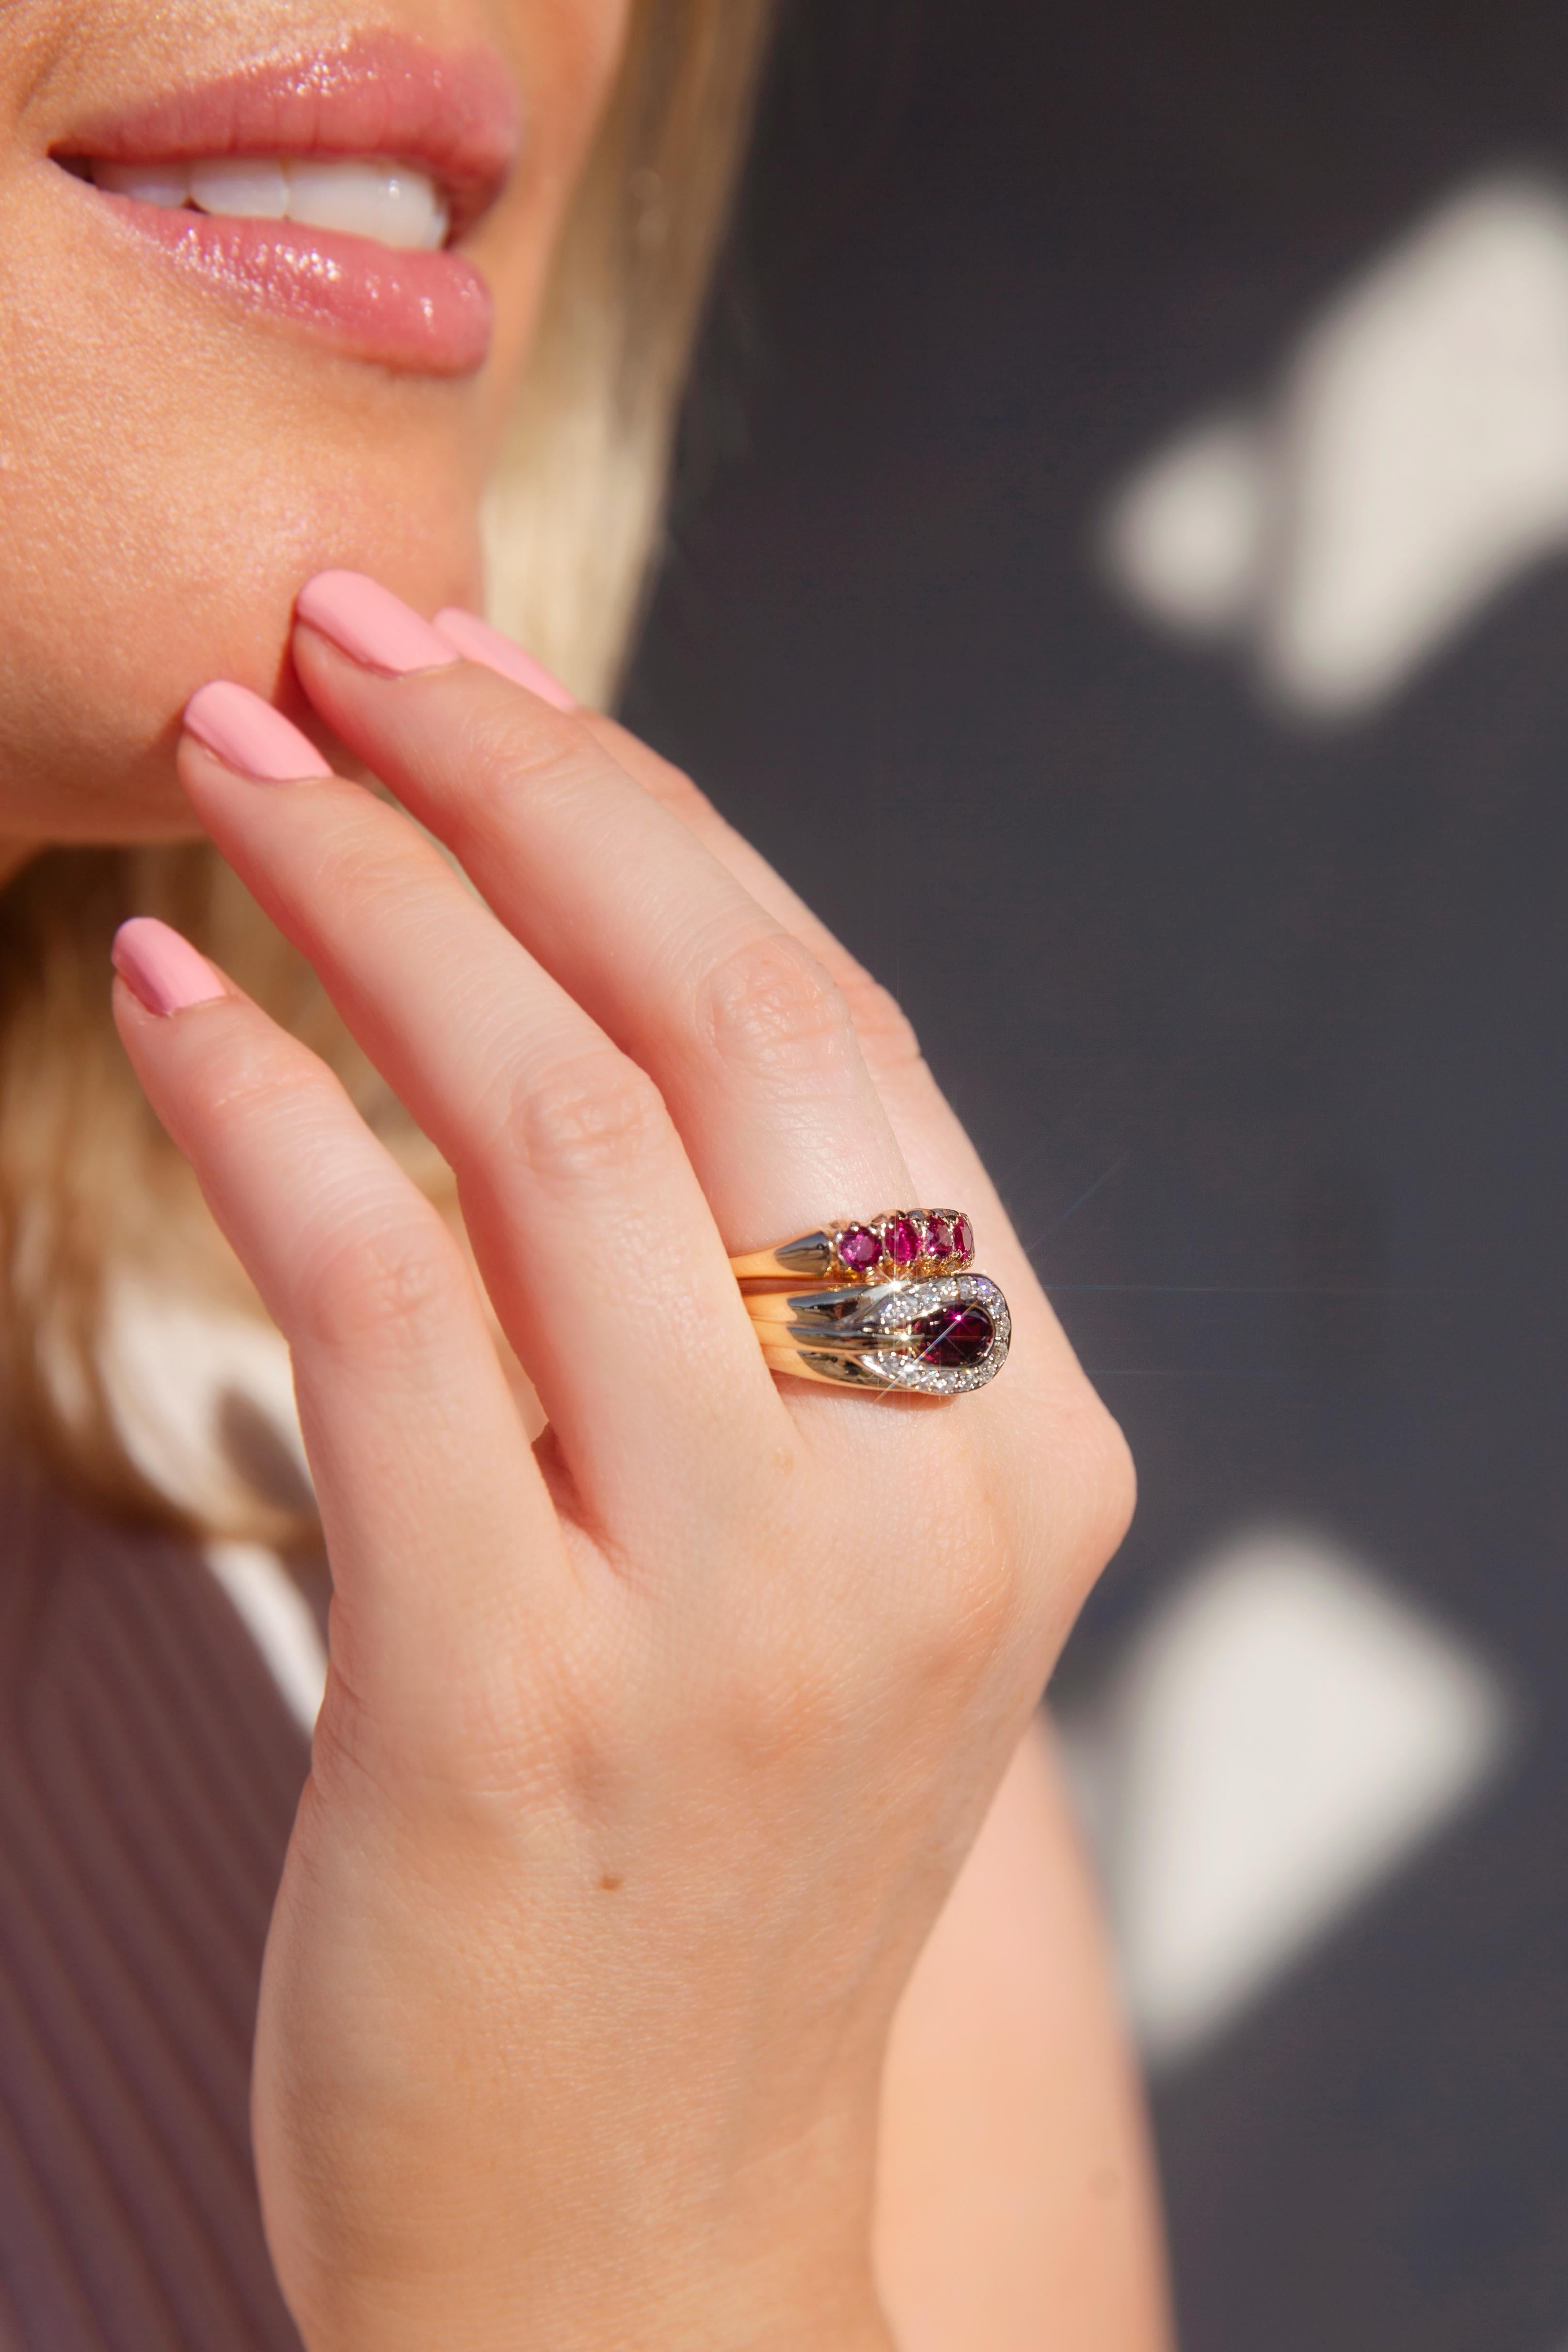 Façonnée avec amour en or 9 carats, la bague Lisa, avec ses rubis naturels cramoisis dans une monture London Bridge, est un magnifique bijou vintage. Symbole de la passion, elle est un cadeau parfait pour votre bien-aimé(e).

L'anneau Lisa Détails